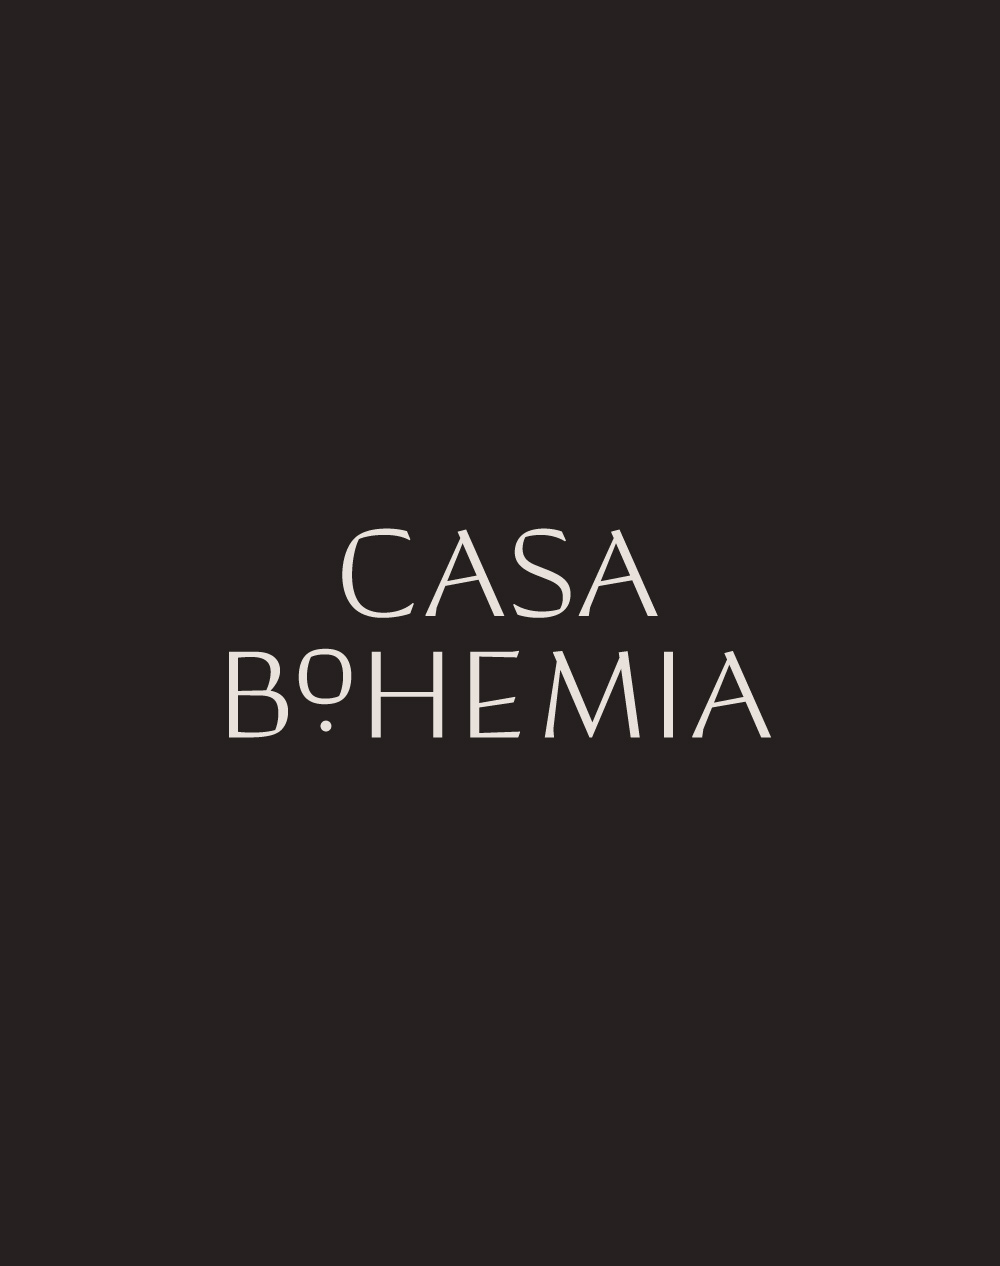 Casa Boehmia logo